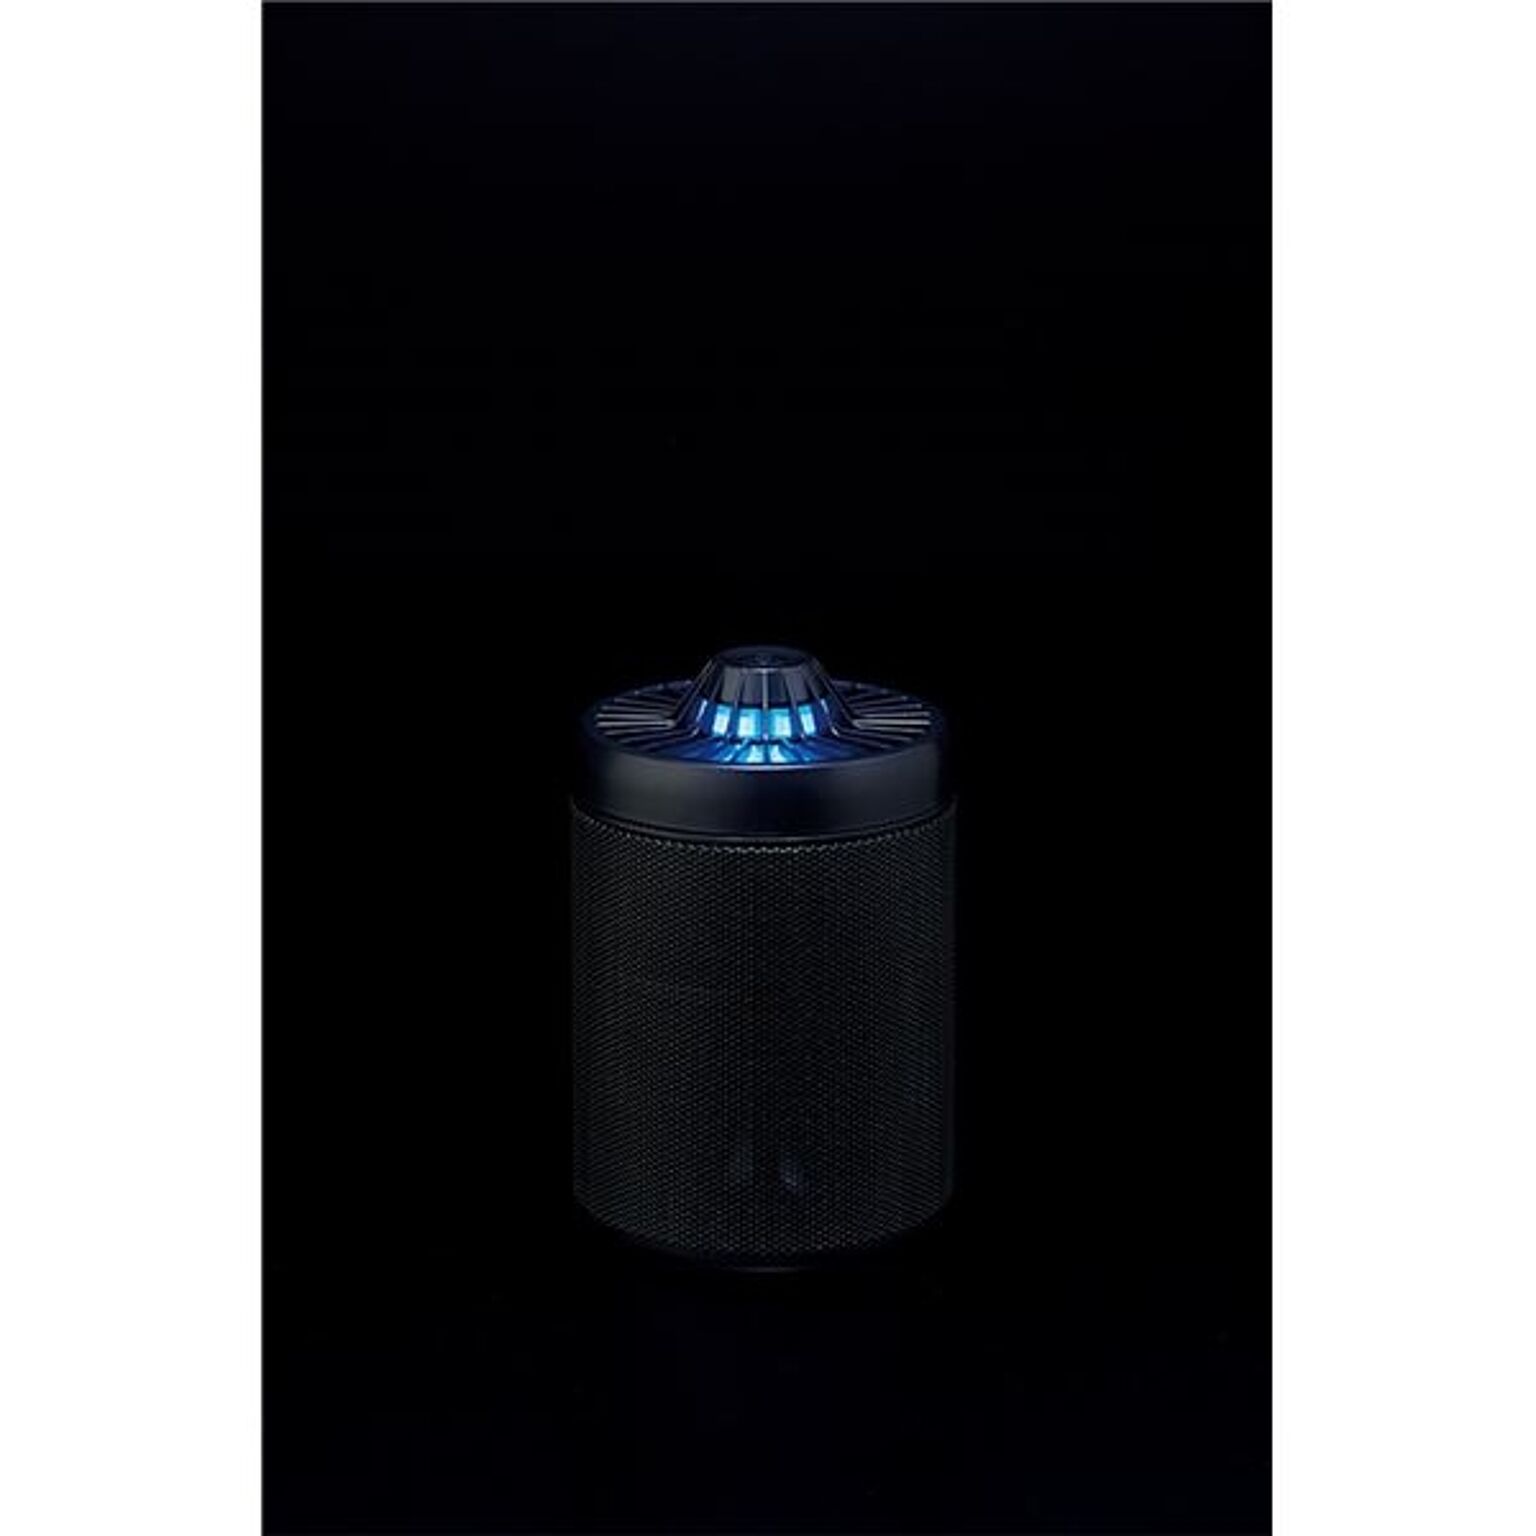 LED 蚊取り器 防虫用品 約幅11.2×奥行11.2×高さ16.7cm スチール お手入れ簡単 UV USBケーブル ACアダプター付き リビング